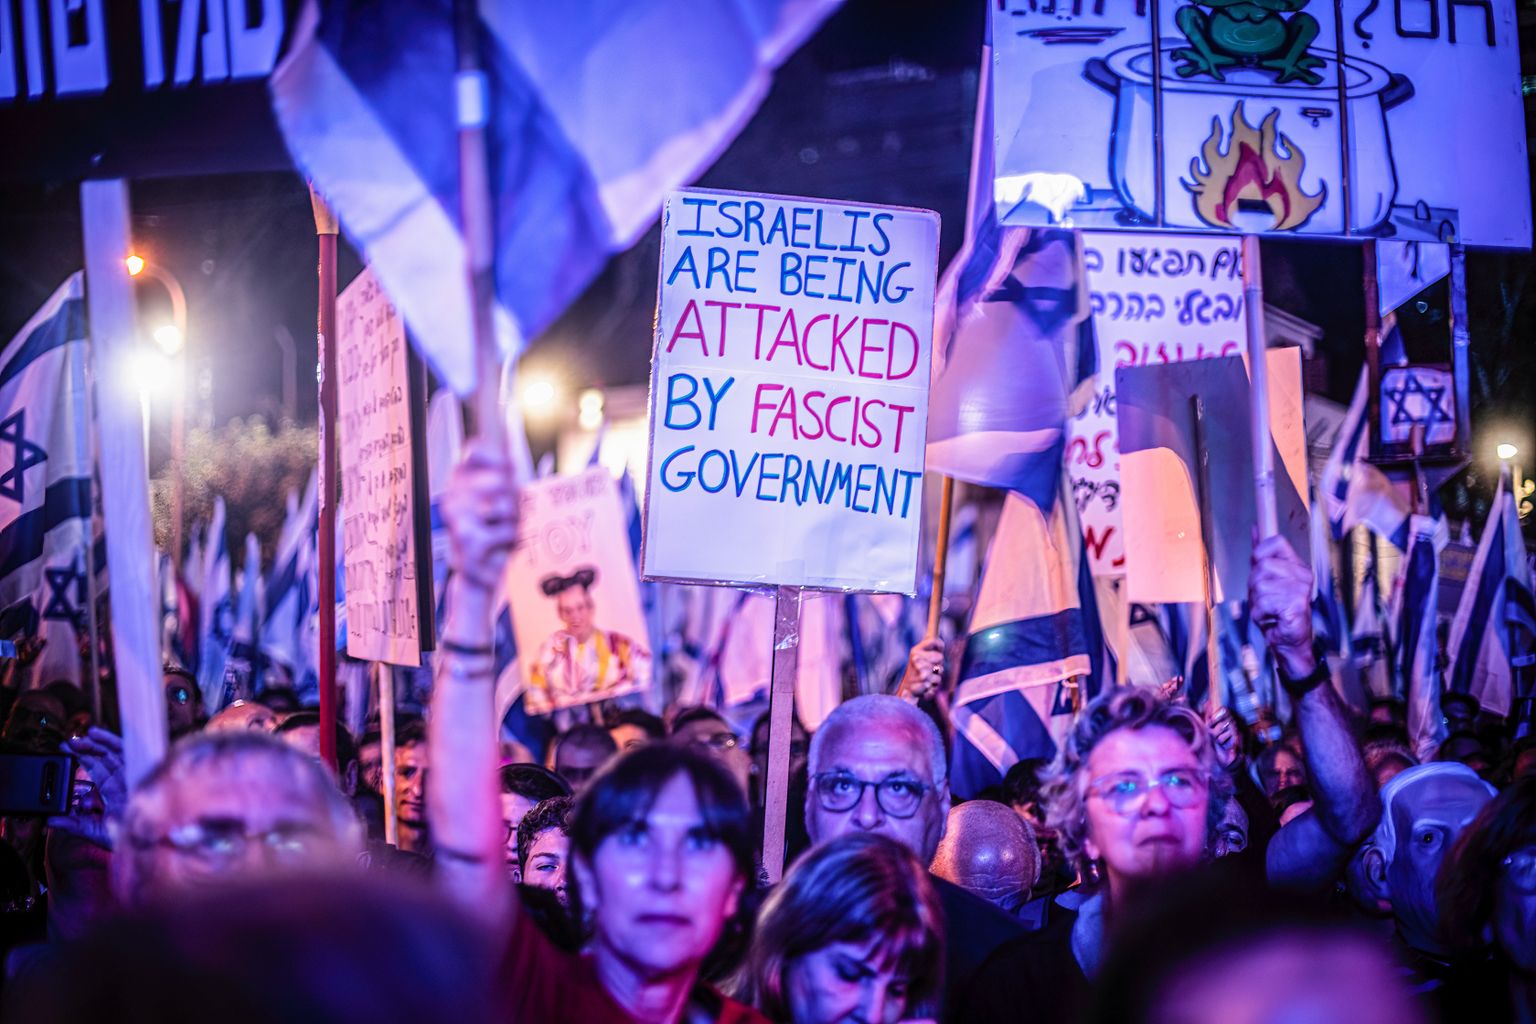 Iisraellased protestimas kohtusüsteemi ümberkorraldamise ja peaminister Benjamin Netanyahu valitsuse vastu.